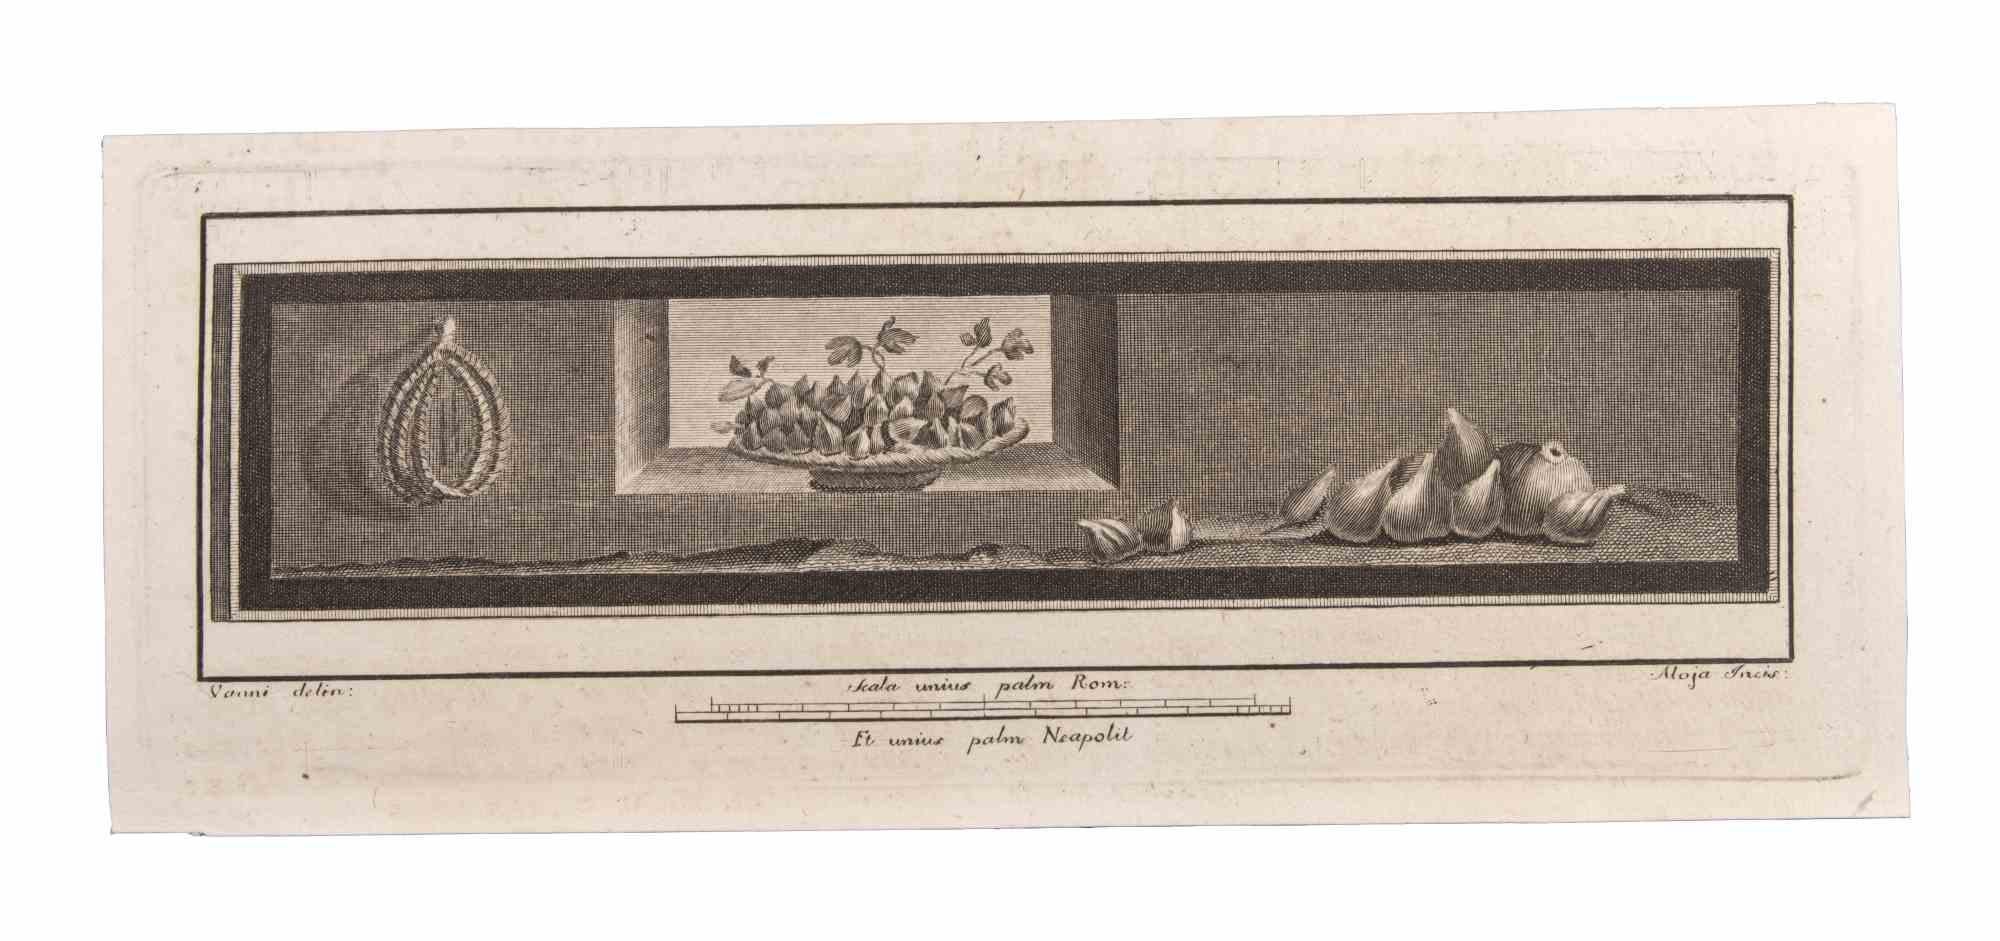 Decoration With Fruits ist eine Radierung realisiert von  Luigi Aloja (1783-1837).

Die Radierung gehört zu der Druckserie "Antiquities of Herculaneum Exposed" (Originaltitel: "Le Antichità di Ercolano Esposte"), einem achtbändigen Band mit Stichen